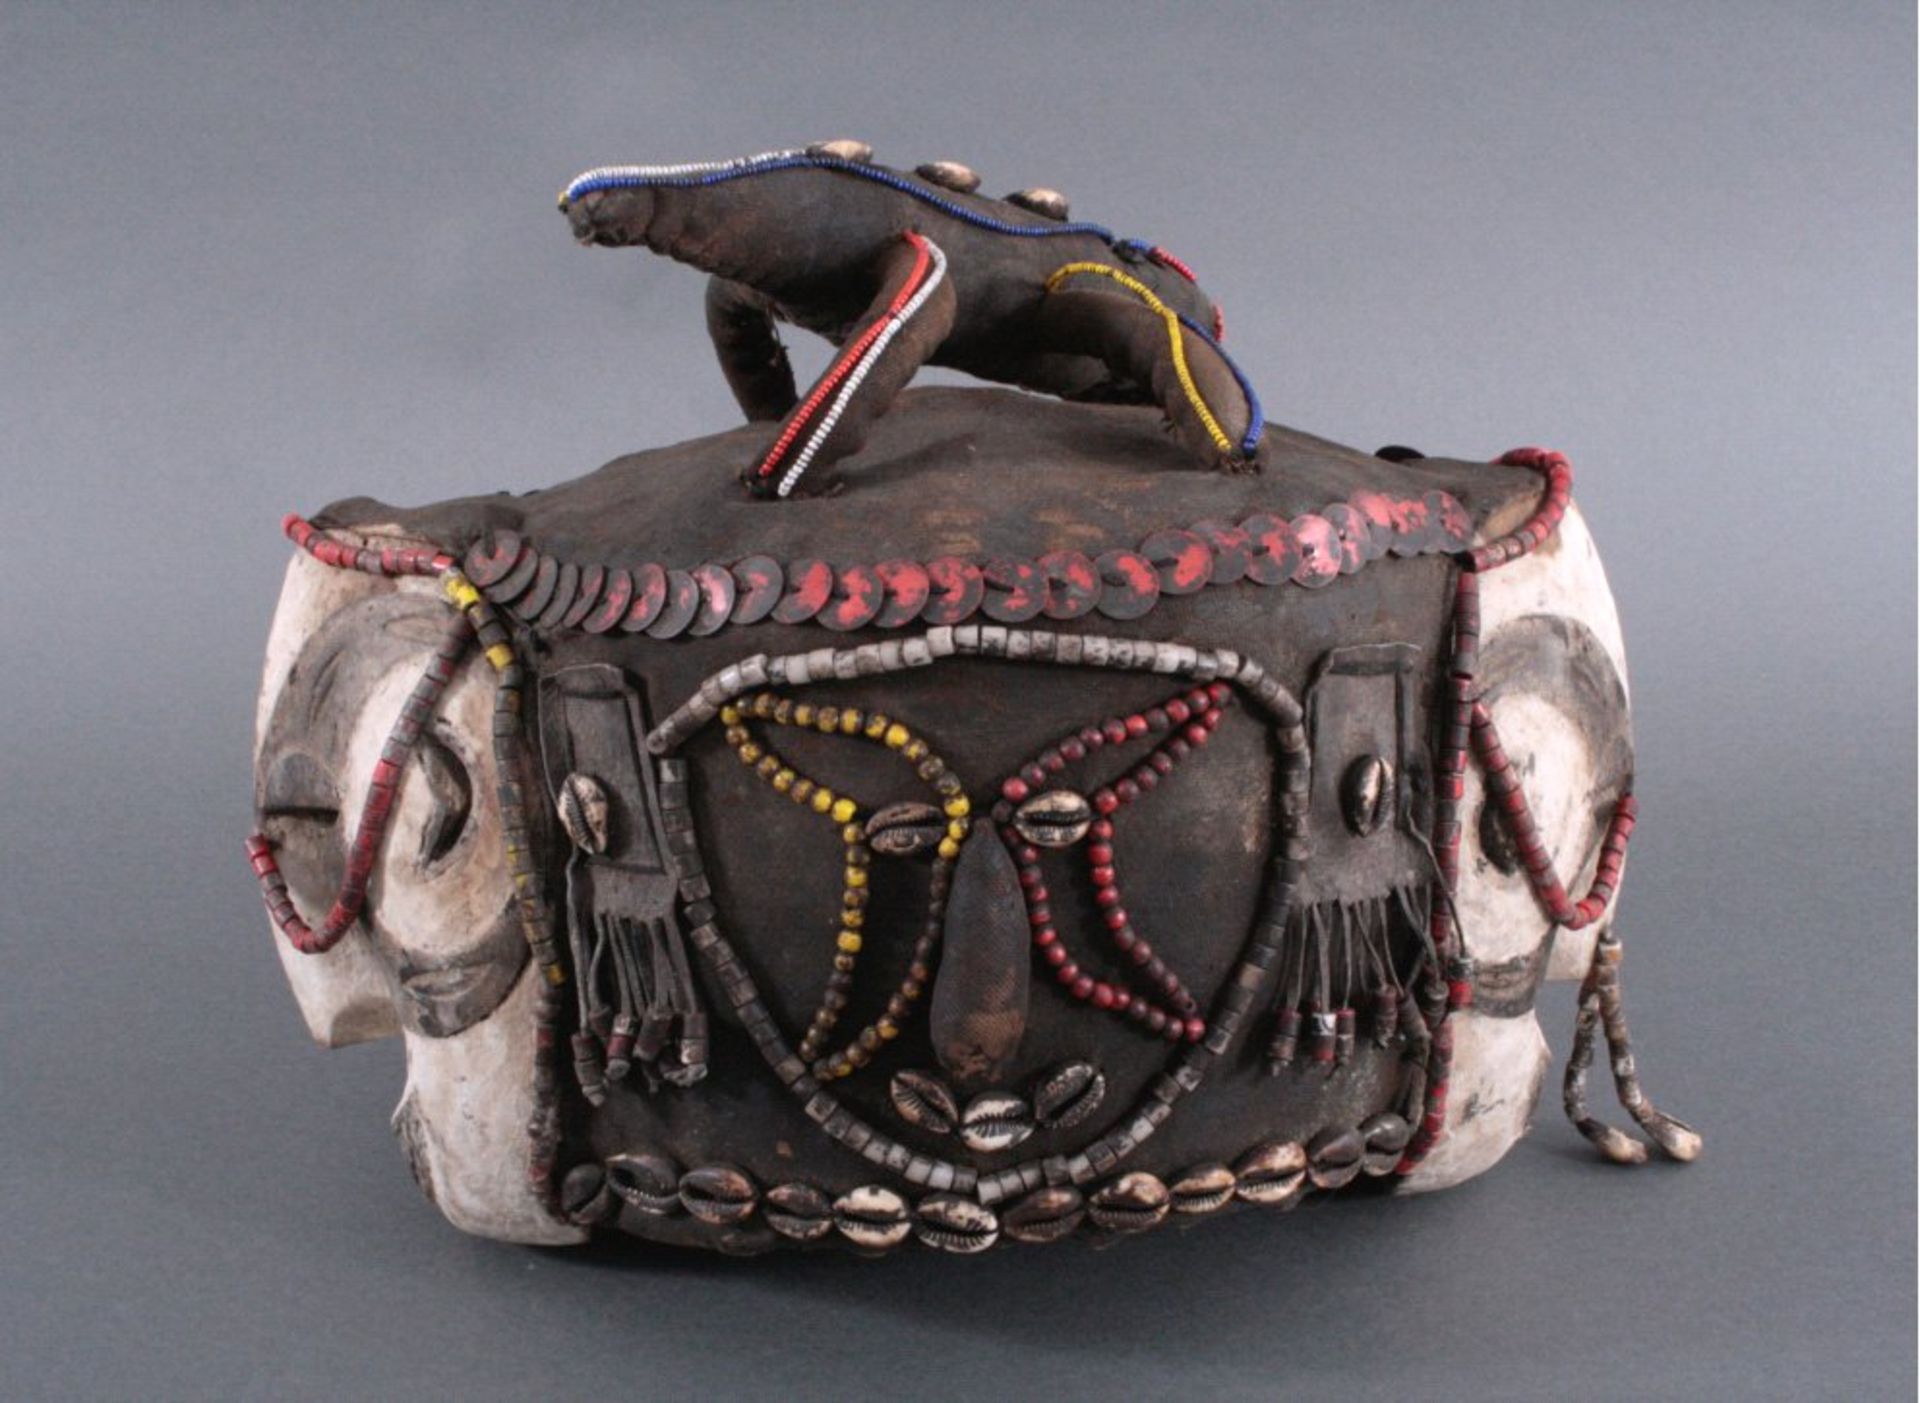 Casquet der Ibu, Nigeria 1. Hälfte 20. JhAus Leder, Schilf und Holz gefertigt, besetzt mit